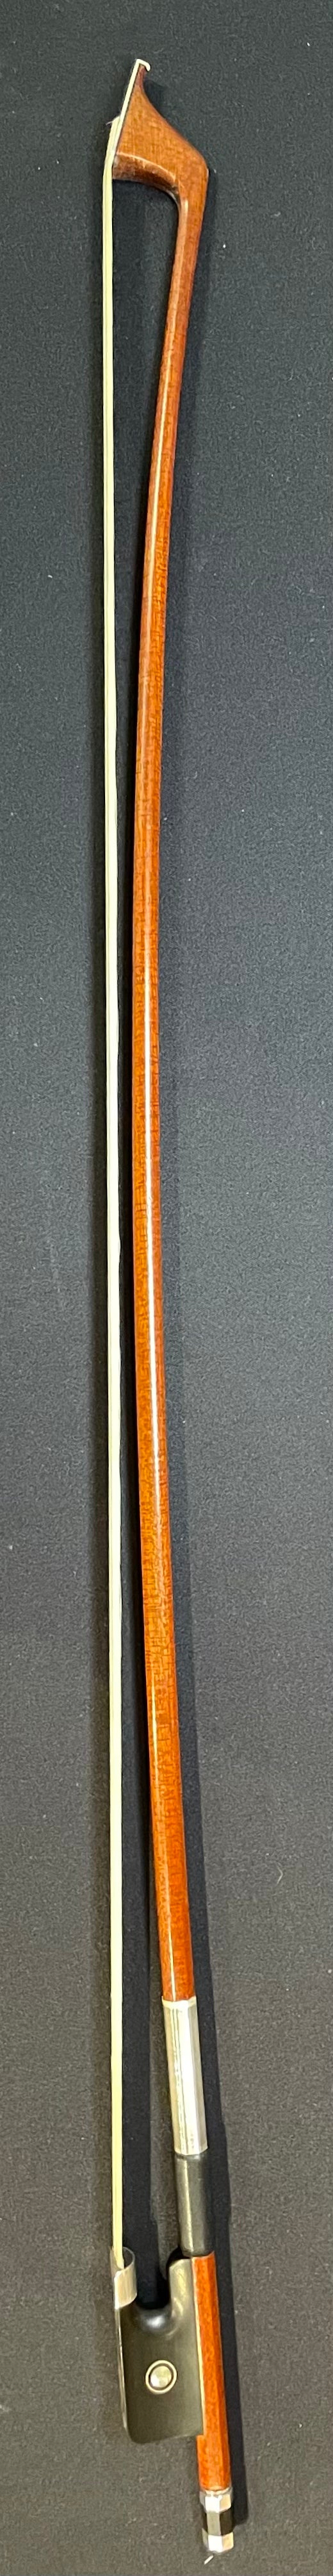 4/4 Cello Bow - XD03 Natural Carbon Fiber Model